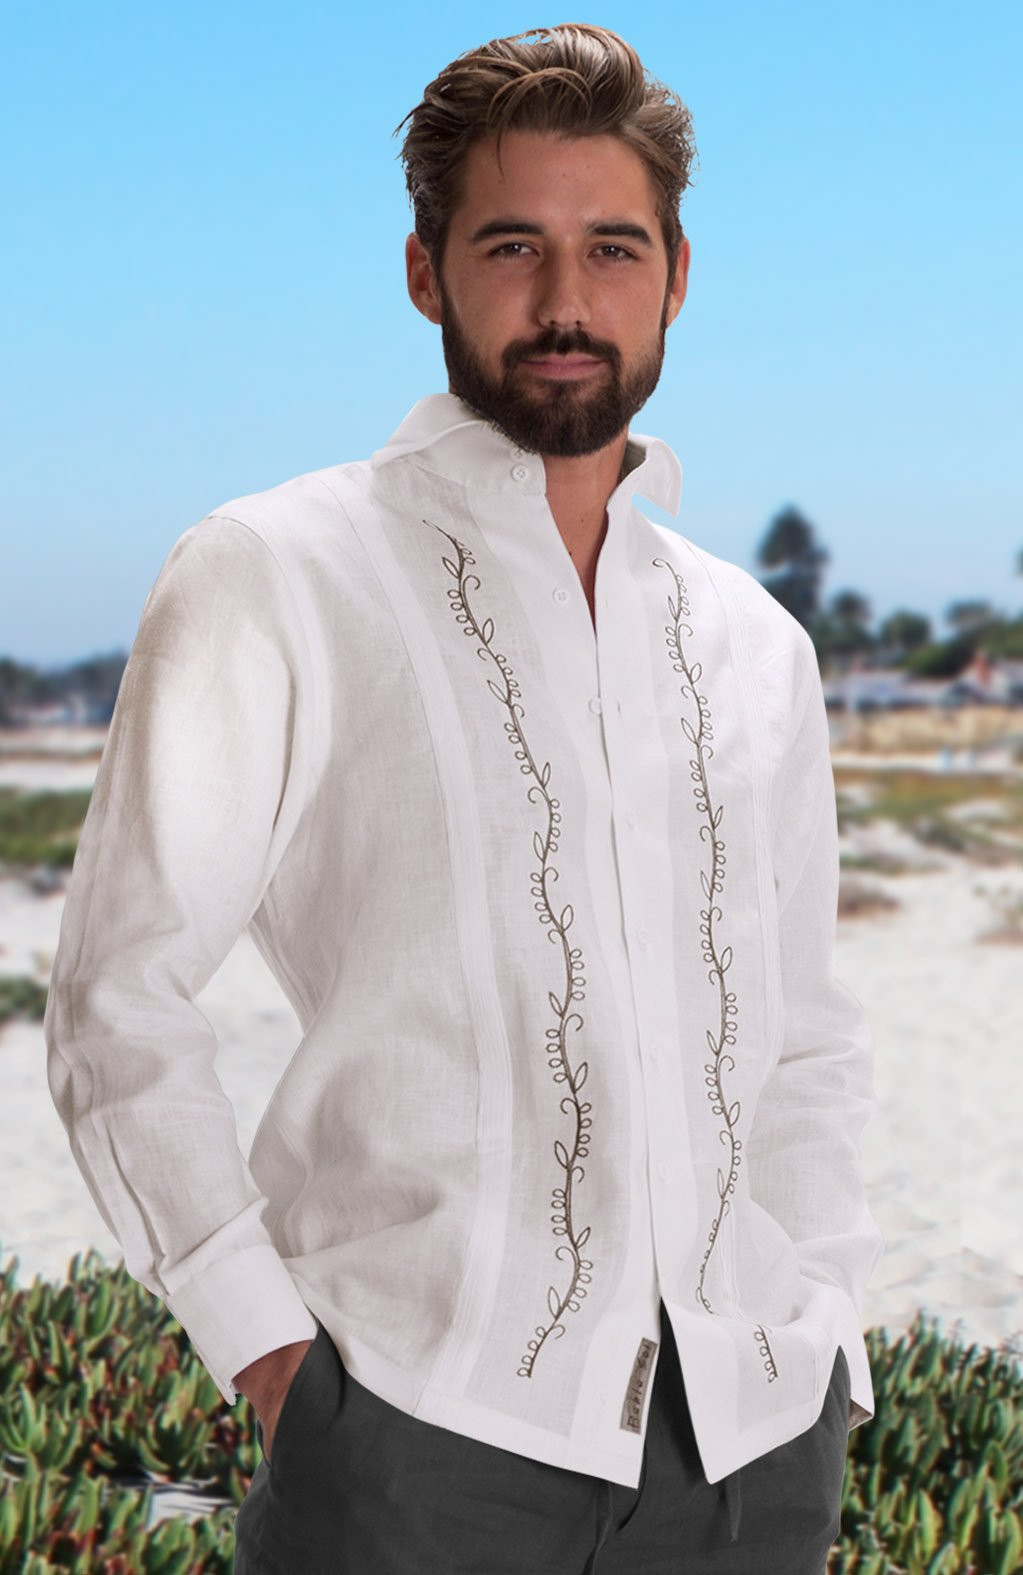 Beach Wedding Shirts For Men
 Canali Custom Italian Linen Guayabera Shirts for Men